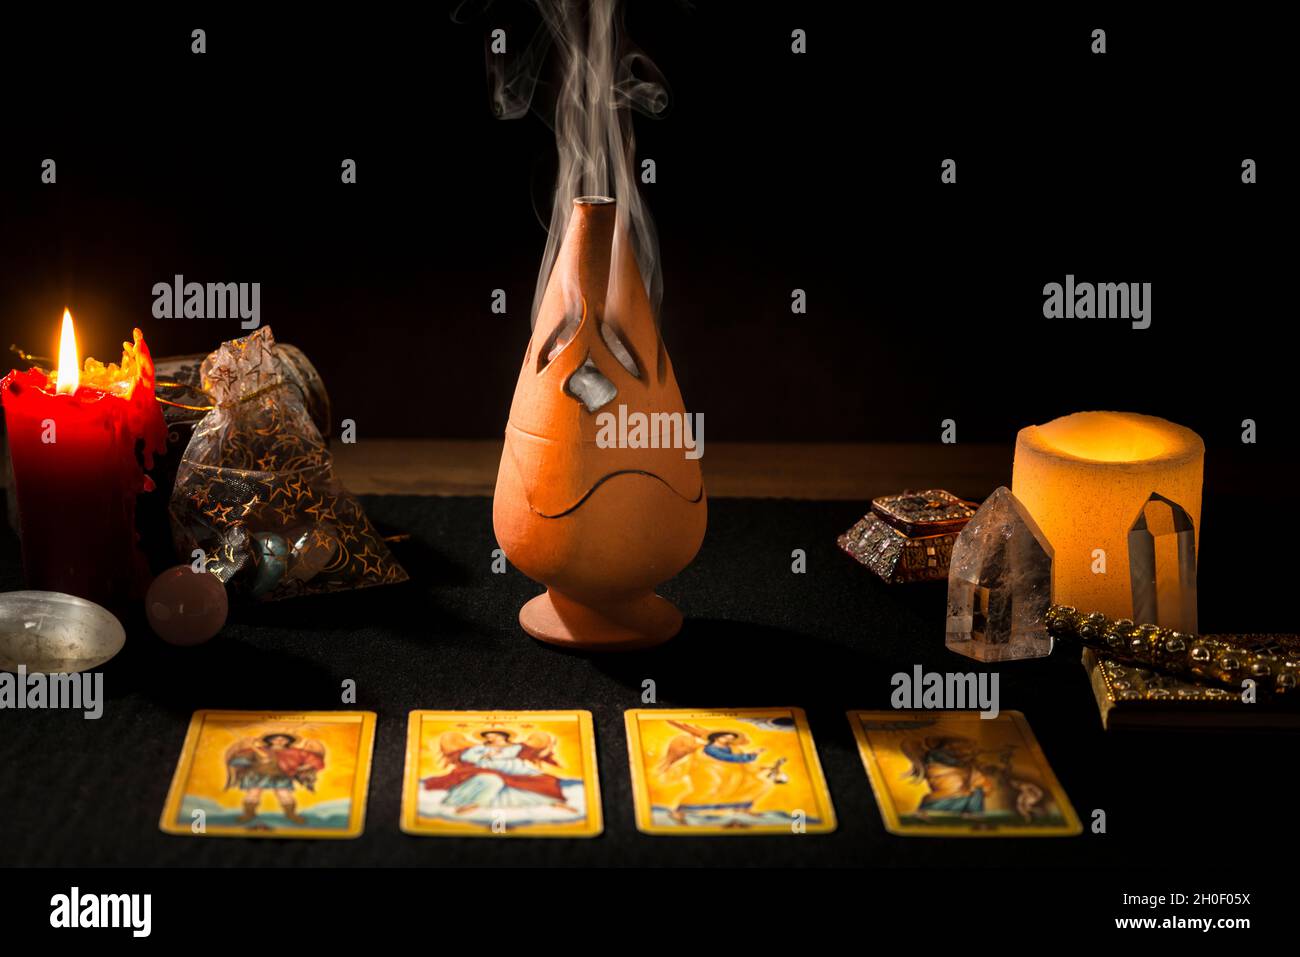 Stillleben mit Tarot-Karten, Kerzen, Weihrauch und anderen Gegenständen auf einem schwarzen Kartentisch während einer Weissagung. Konzept einer Weissagung wi Stockfoto